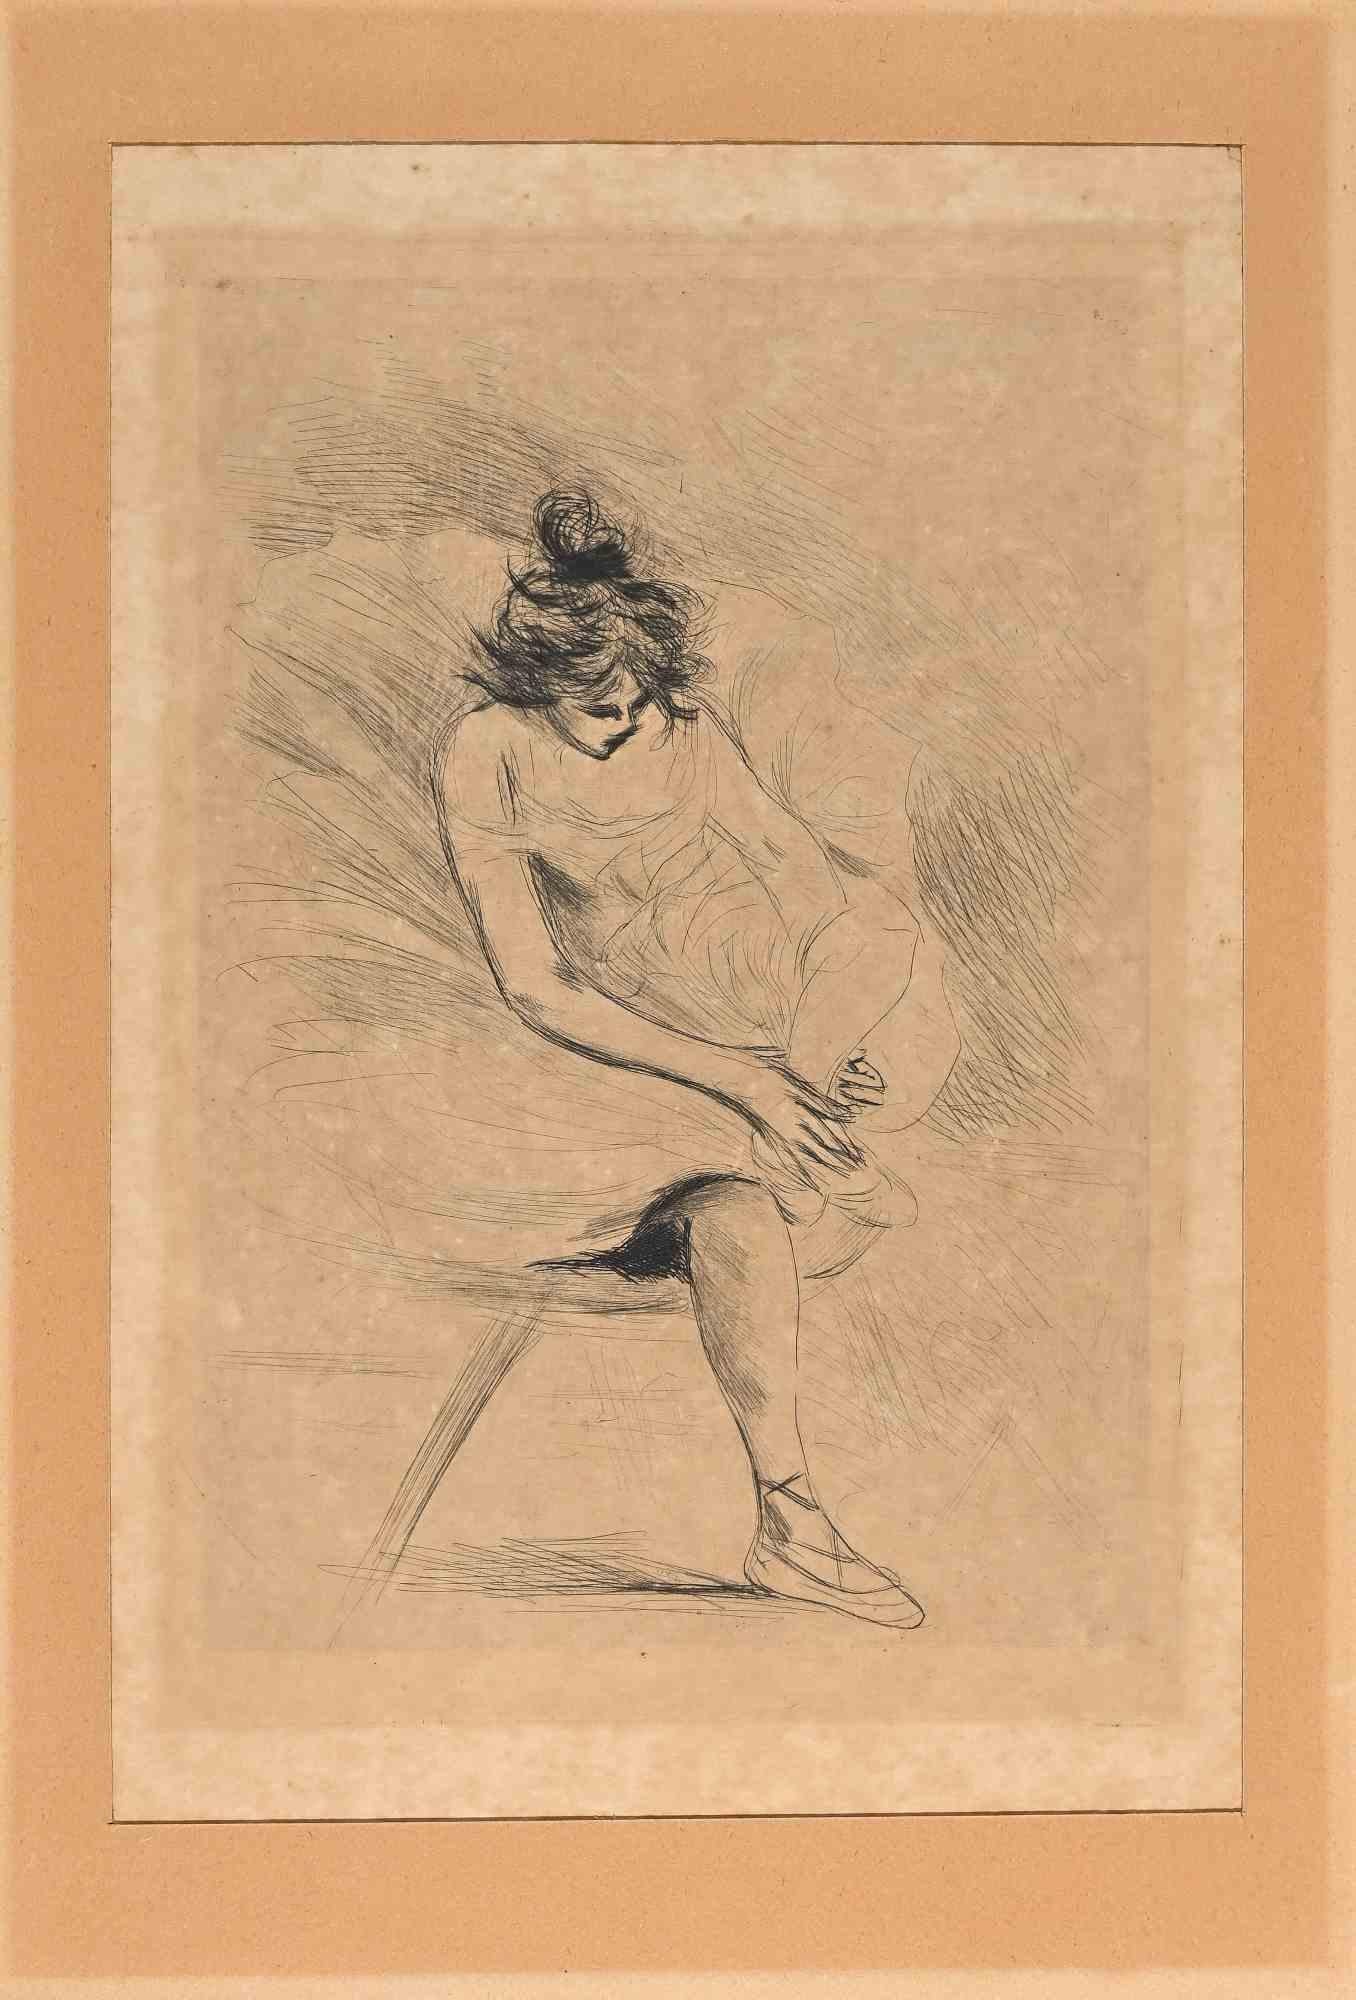 Die Ballerina ist eine schwarz-weiße Radierung von Auguste Legrand (französischer Künstler, tätig zwischen 1825 und 1860).

In sehr gutem Zustand.

Dieses moderne Kunstwerk stellt eine Ballerina in sehr schnellen, geschickten Strichen dar.